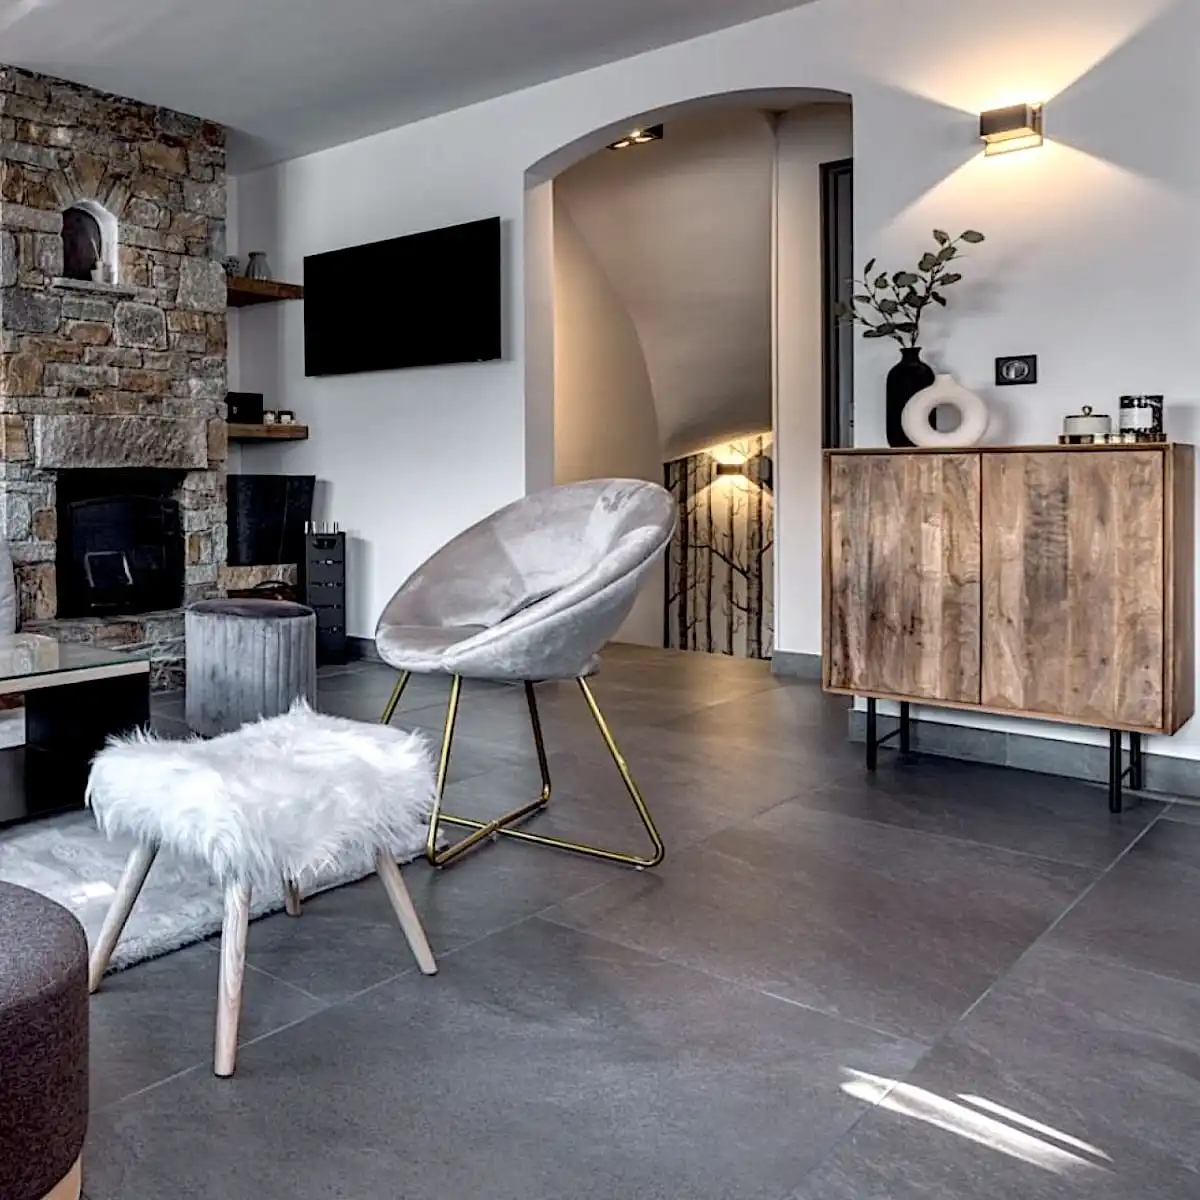  Salon moderne avec un mur en pierre, comprenant une chaise moelleuse, une armoire en bois, un tabouret moelleux et un poêle à bois à panneau 3 plis. 